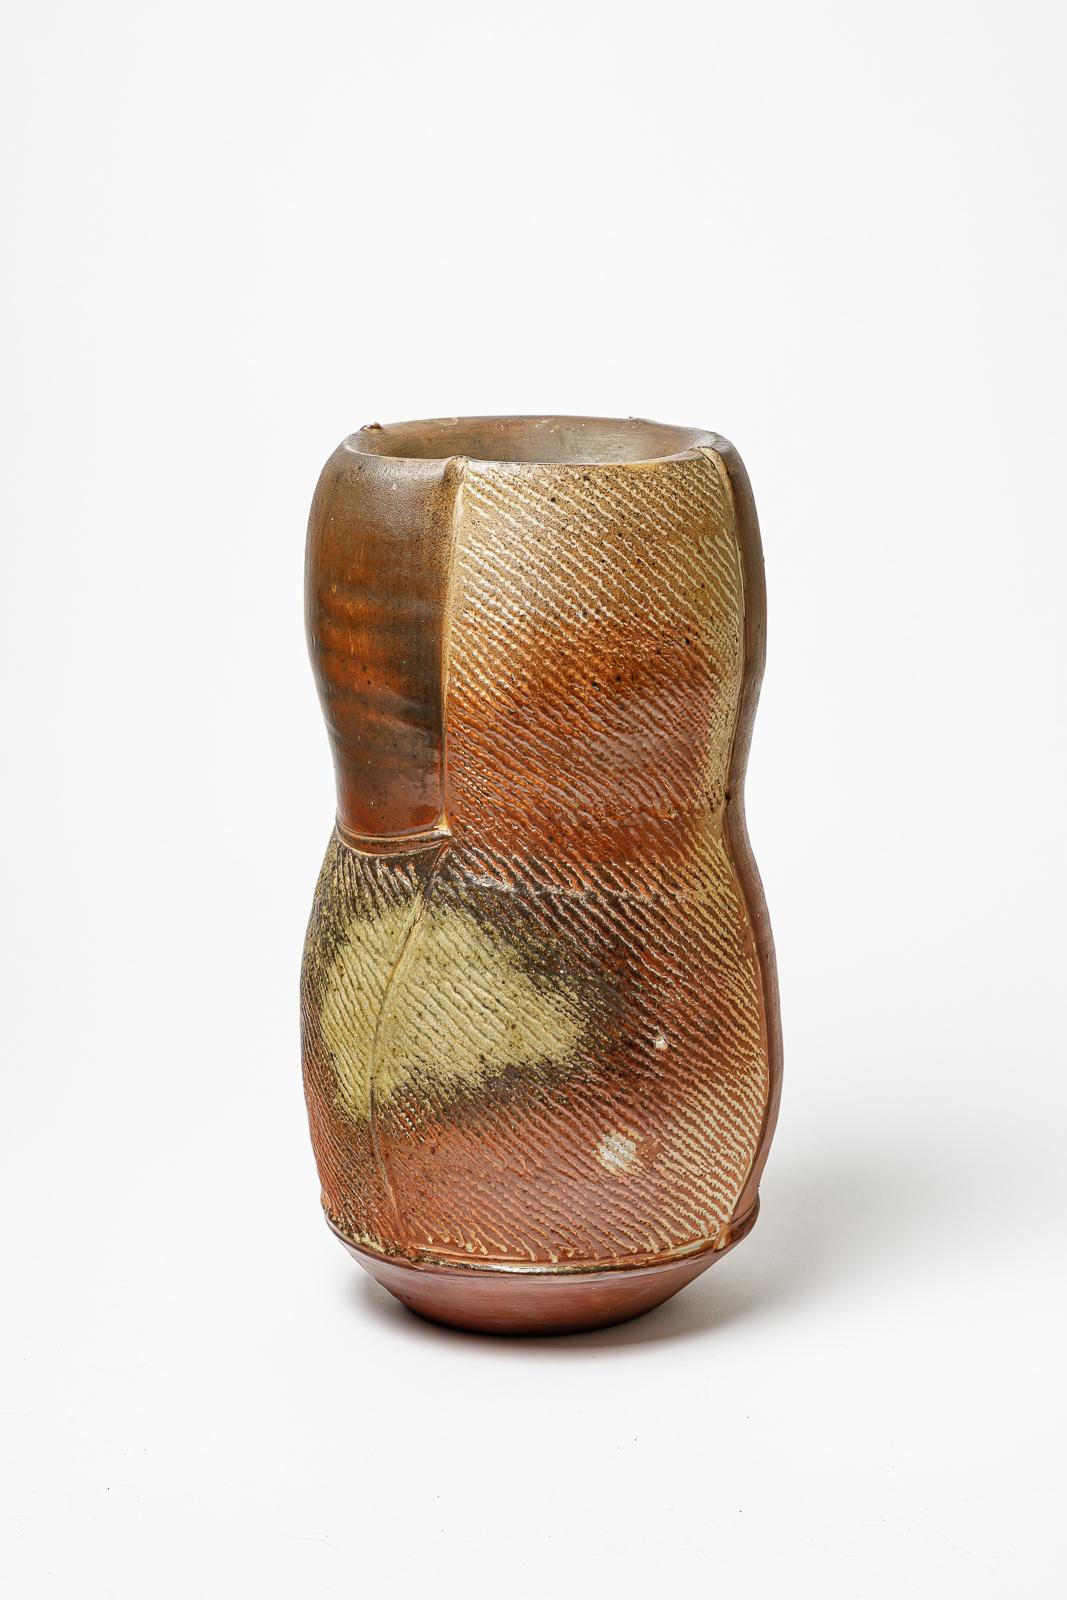 Vase en céramique cuite au feu de bois d'Eric Astoul.
Monogramme de l'artiste sous la base. Circa 1990.
H : 15.7' x 7.5' x 6.7' pouces.